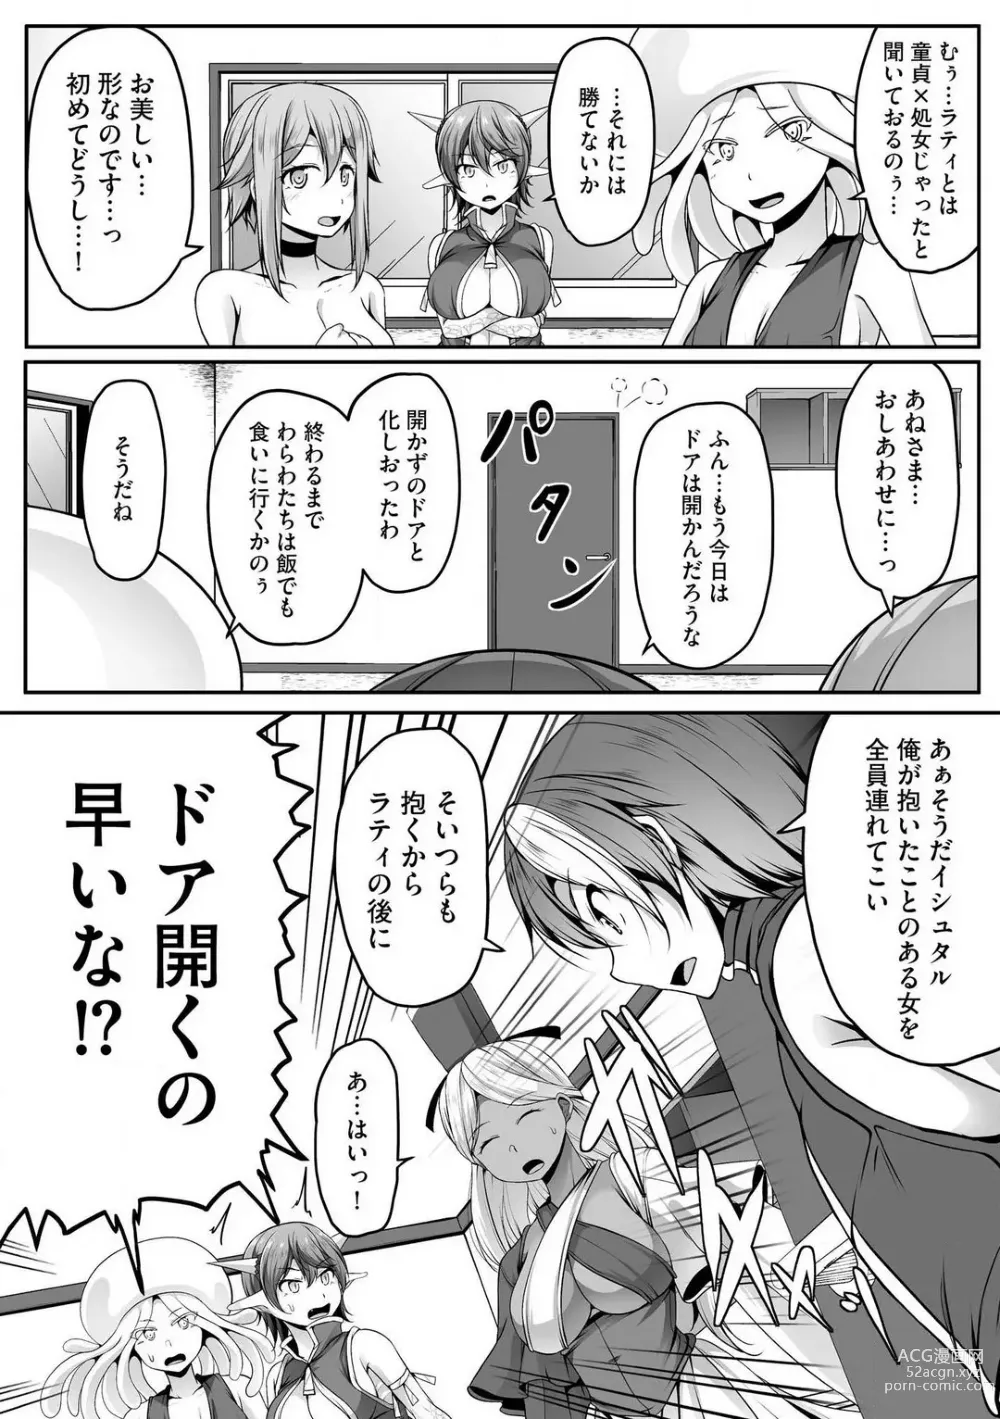 Page 351 of manga Cheat Skill Shihai